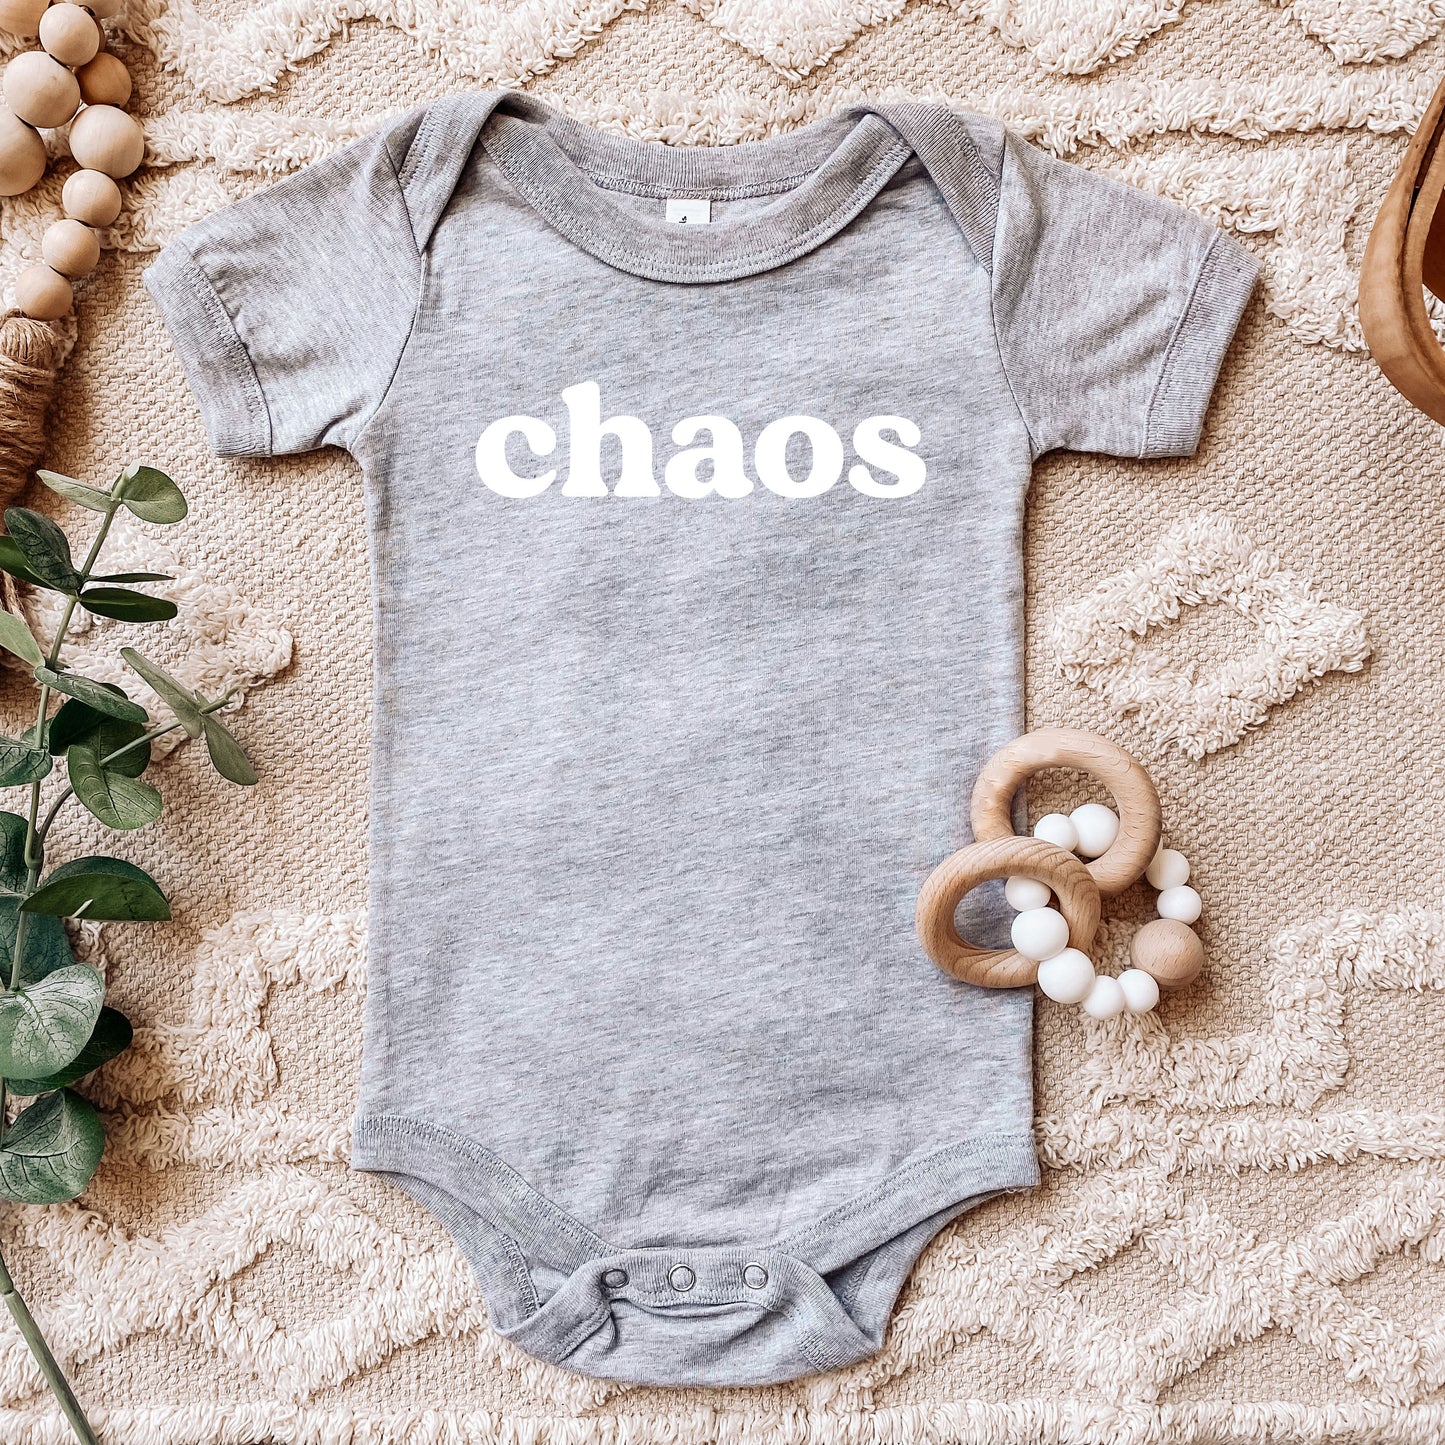 Chaos Follows Me Everywhere / Chaos